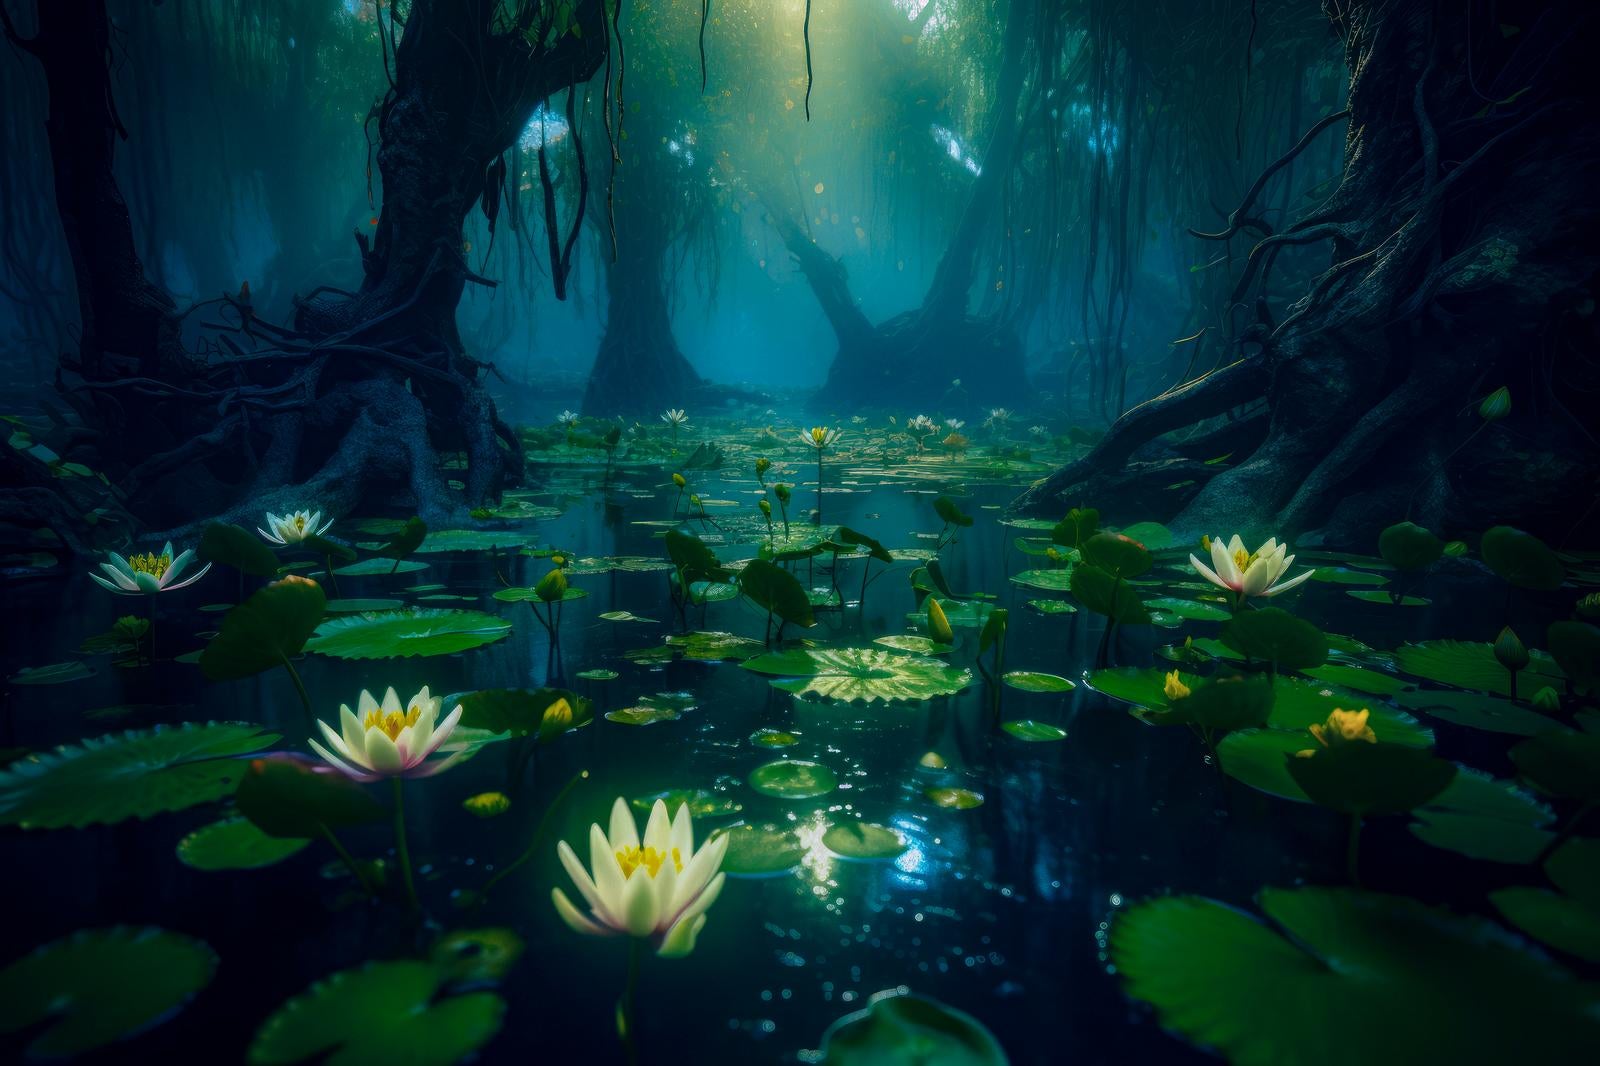 「沈黙の蓮の花と湿地帯の静寂」の写真